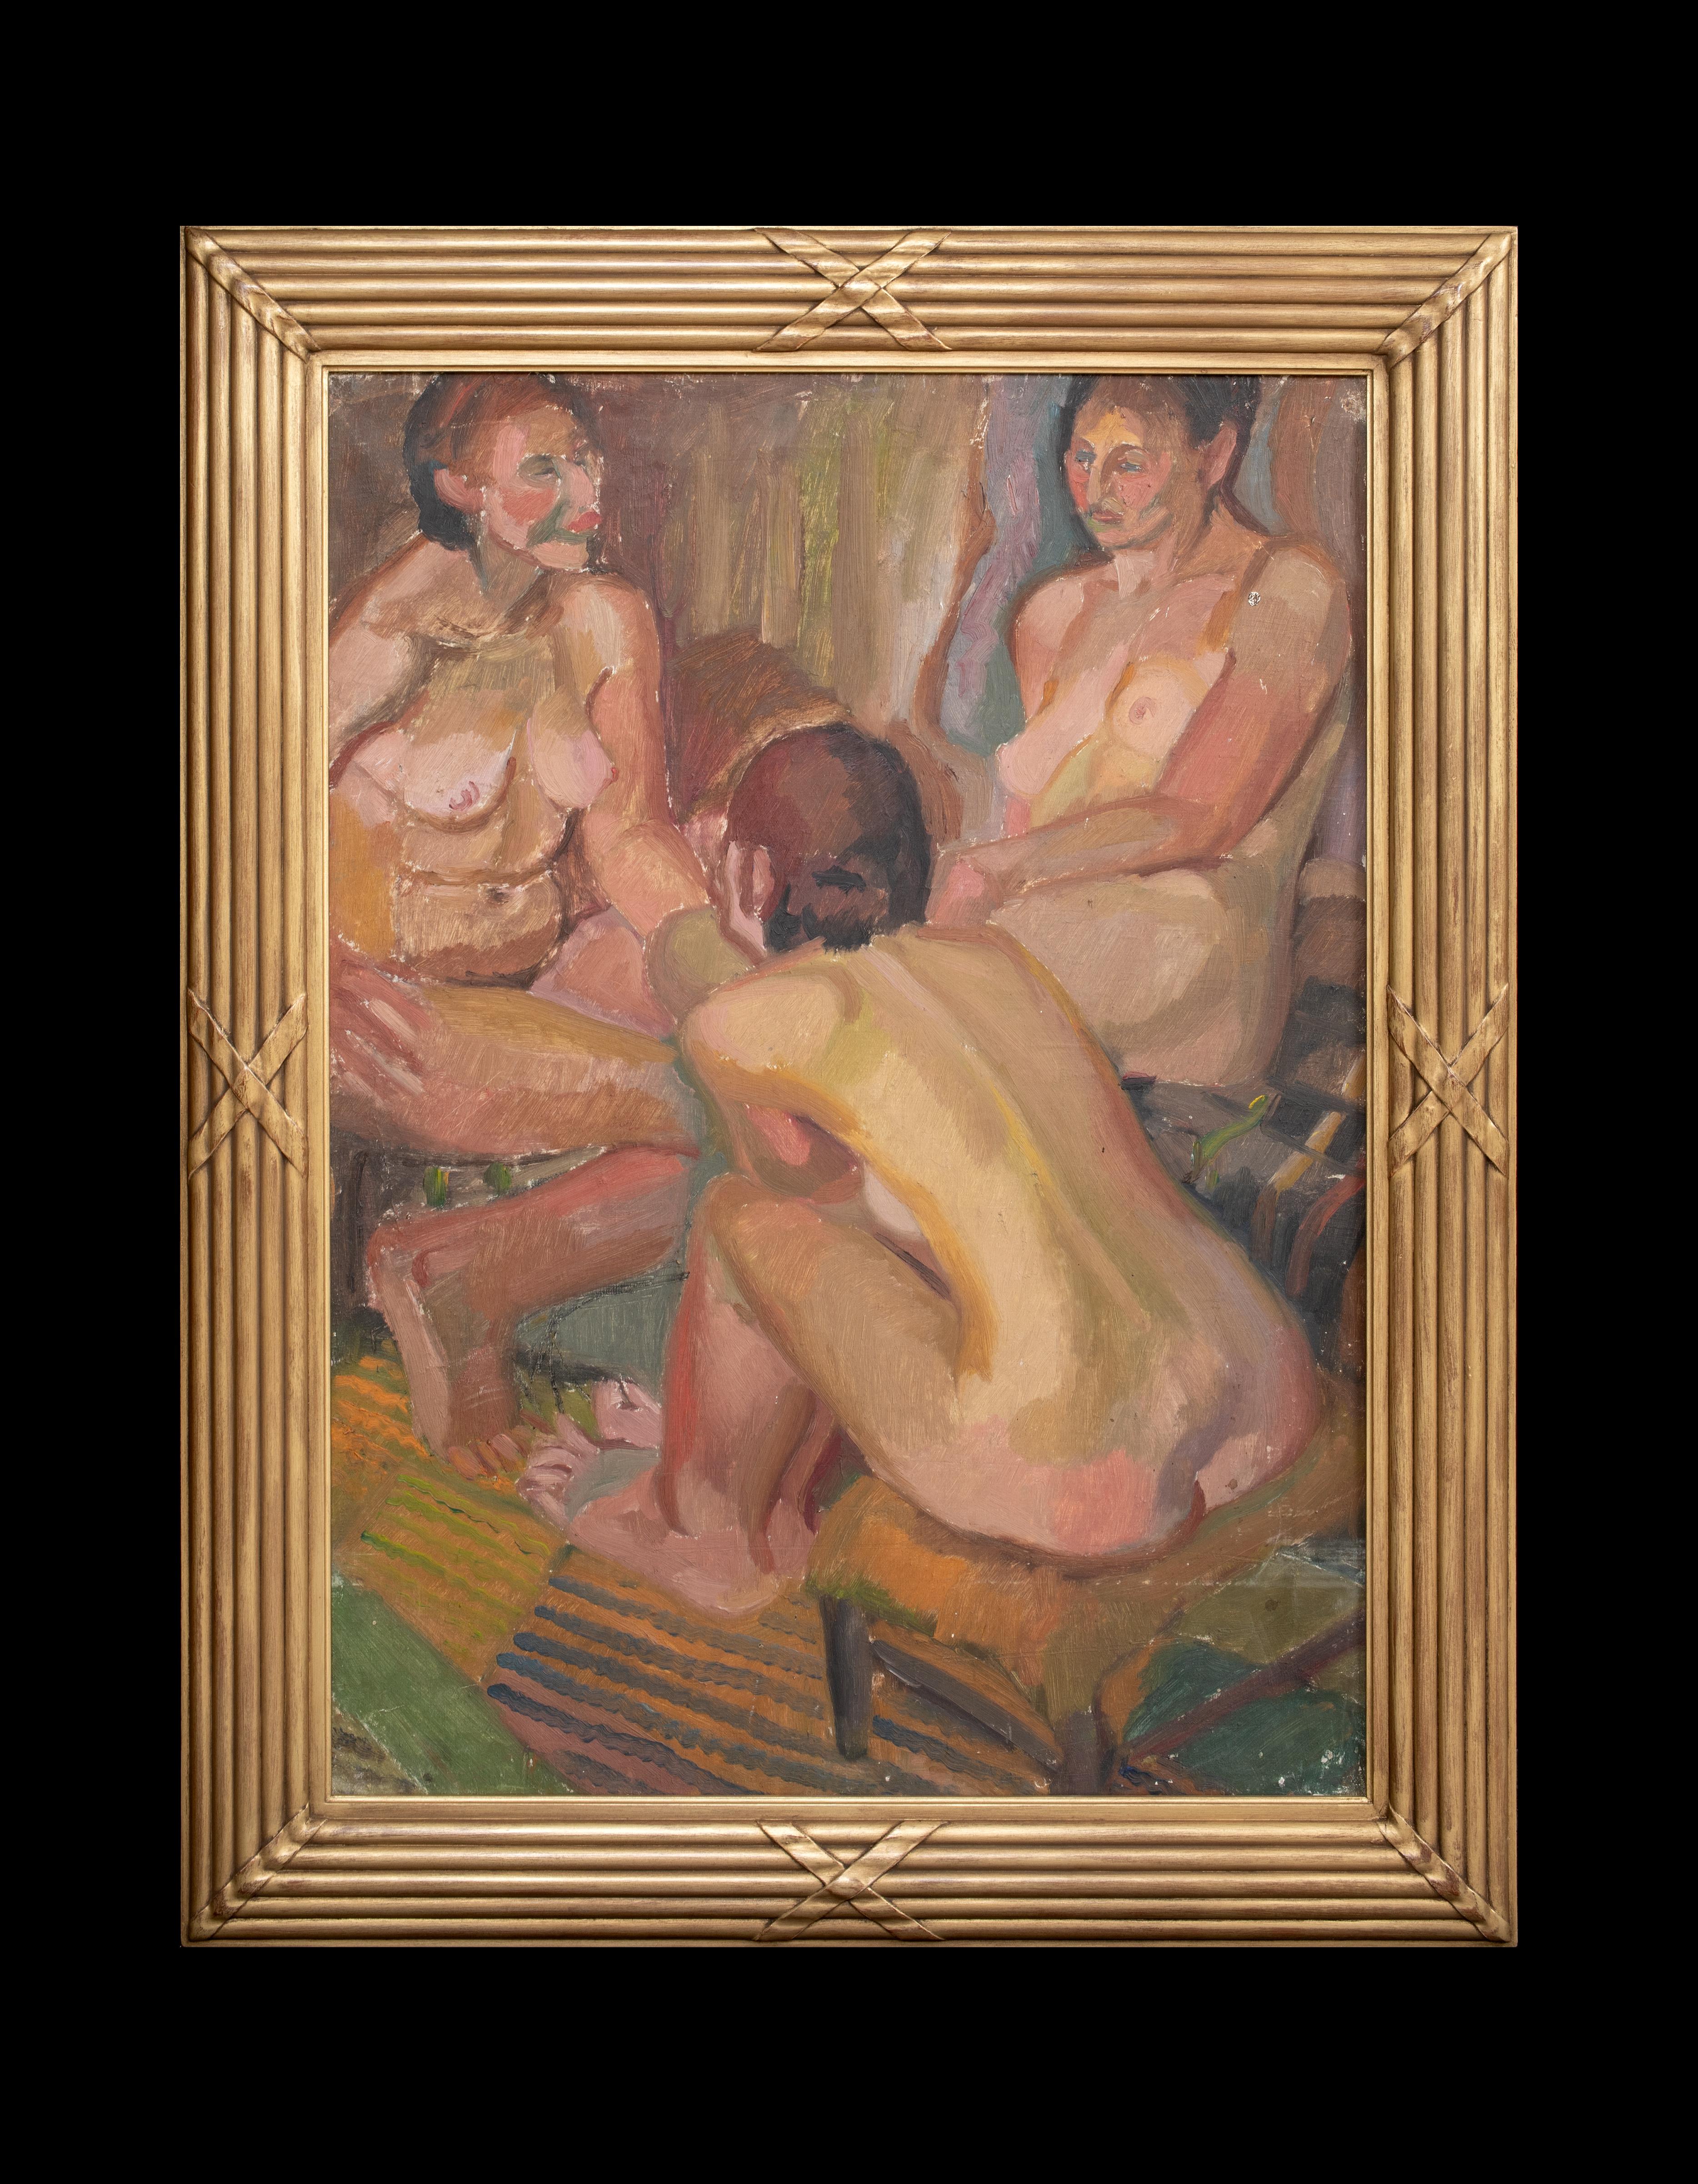 Trois nus, début du 20e siècle 

par Harry Barr (1896-1987)

Grand portrait de trois nus, huile sur toile de Harry Harris, datant du début du 20e siècle. Excellente qualité et excellent état de conservation de l'œuvre de l'Artistics présentée dans